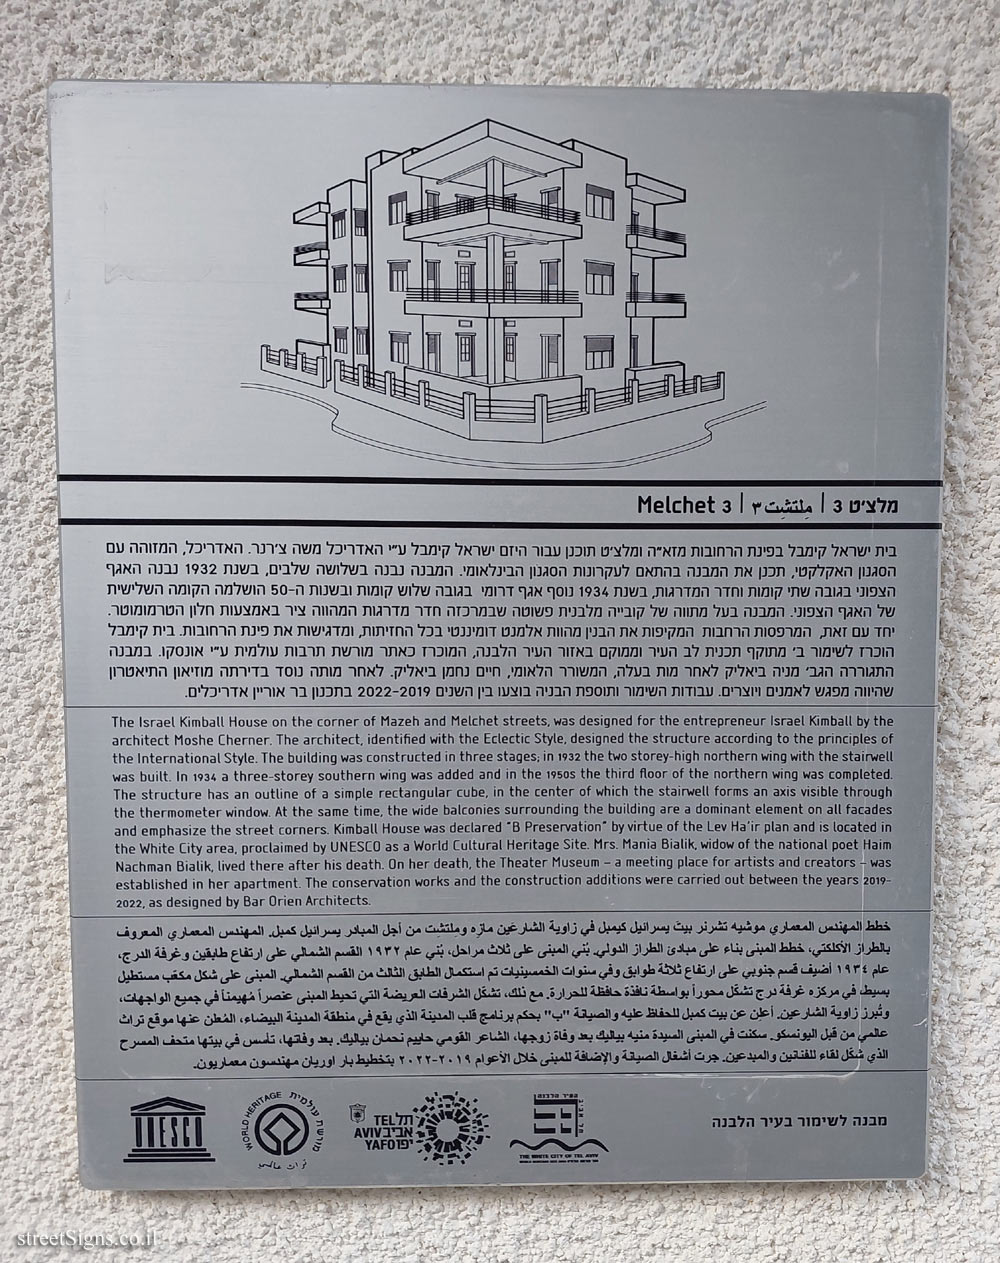 Tel Aviv - buildings for conservation - Melchett 3